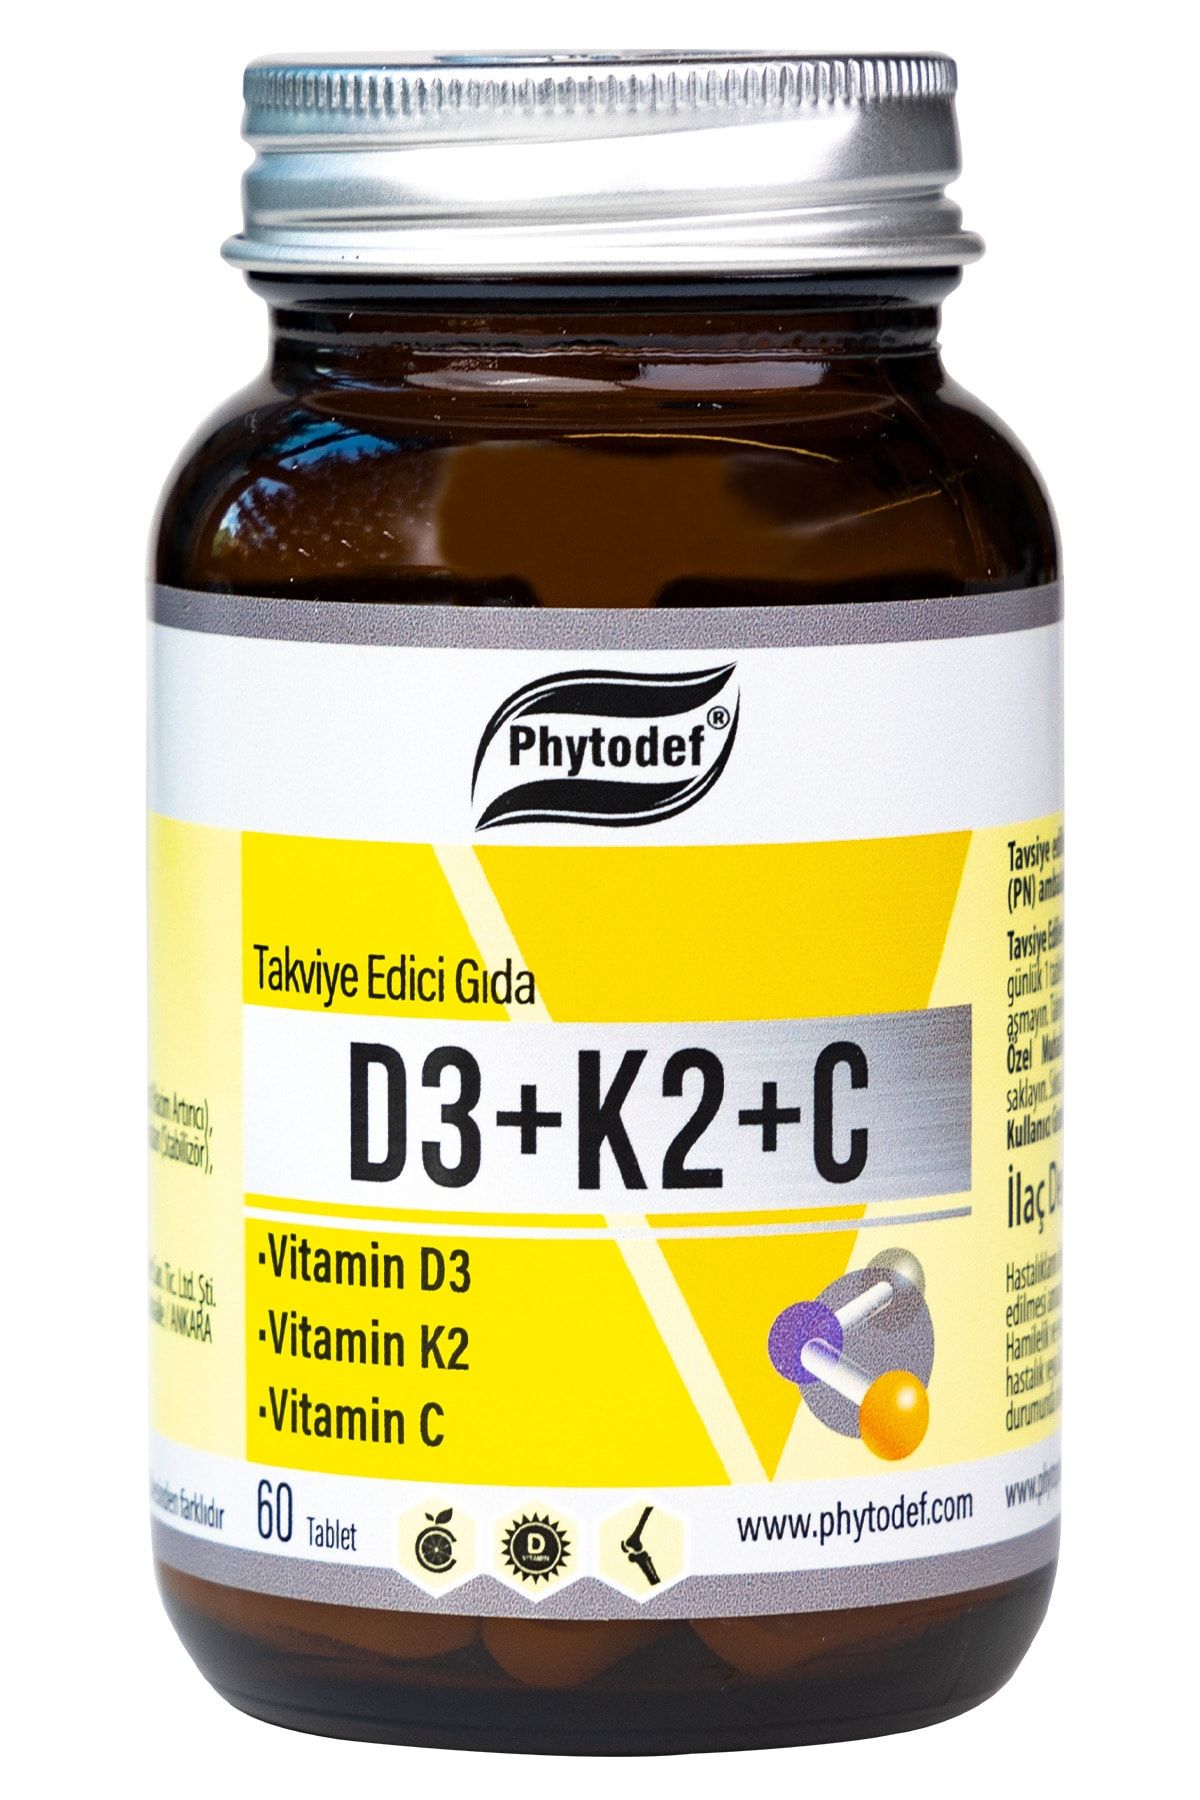 Phytodef D3 + K2 + C - 60 Tablet